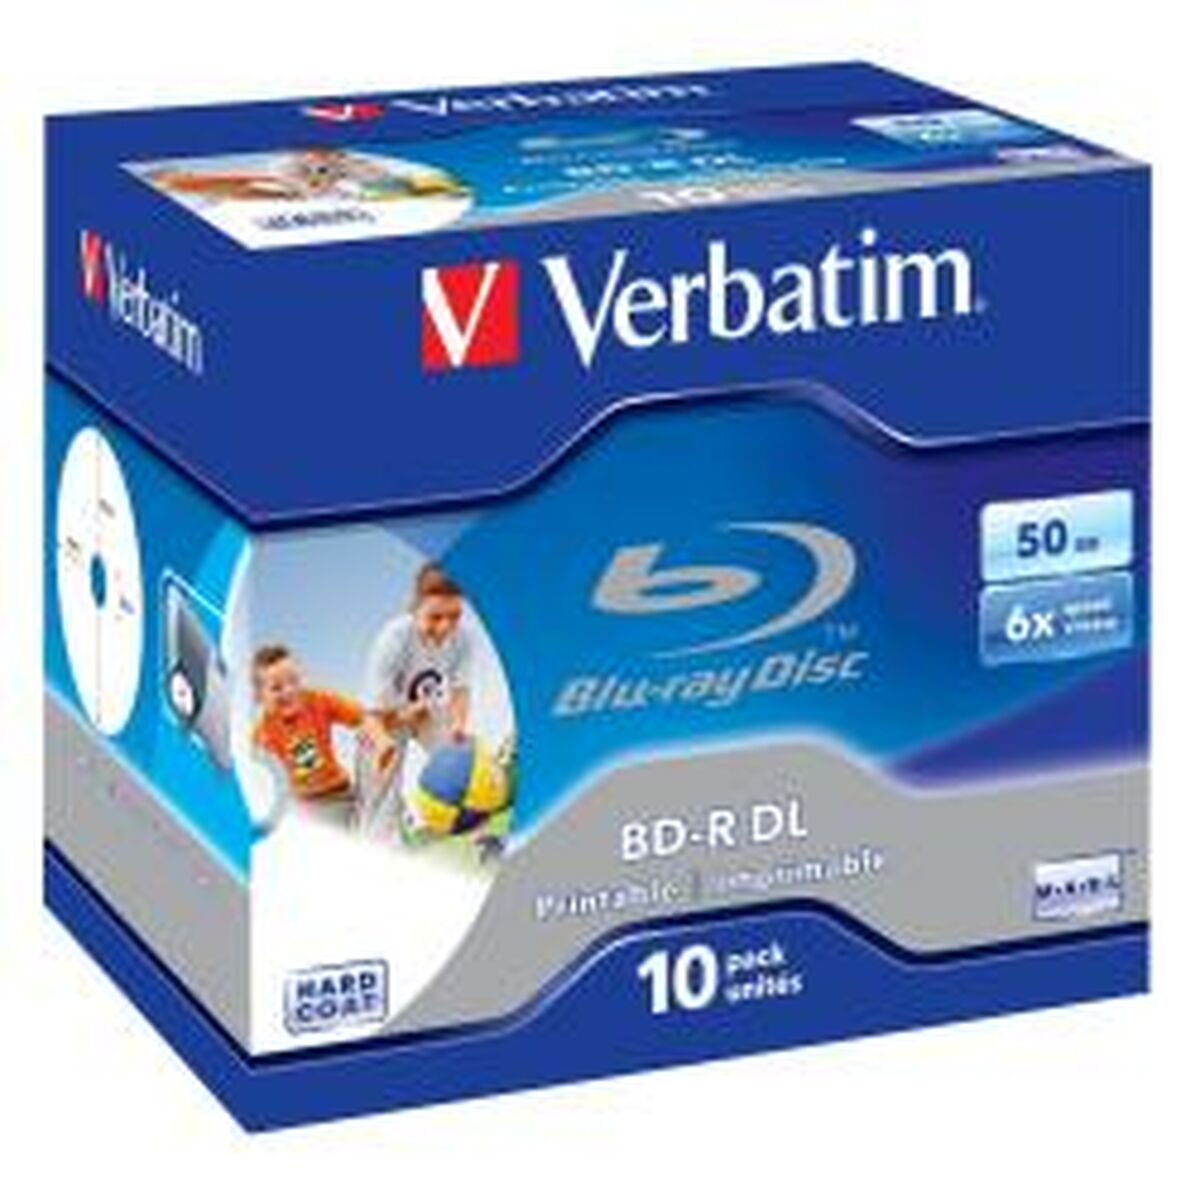 Blu-Ray BD-R Verbatim 43736 6x 50 GB 10 Stück